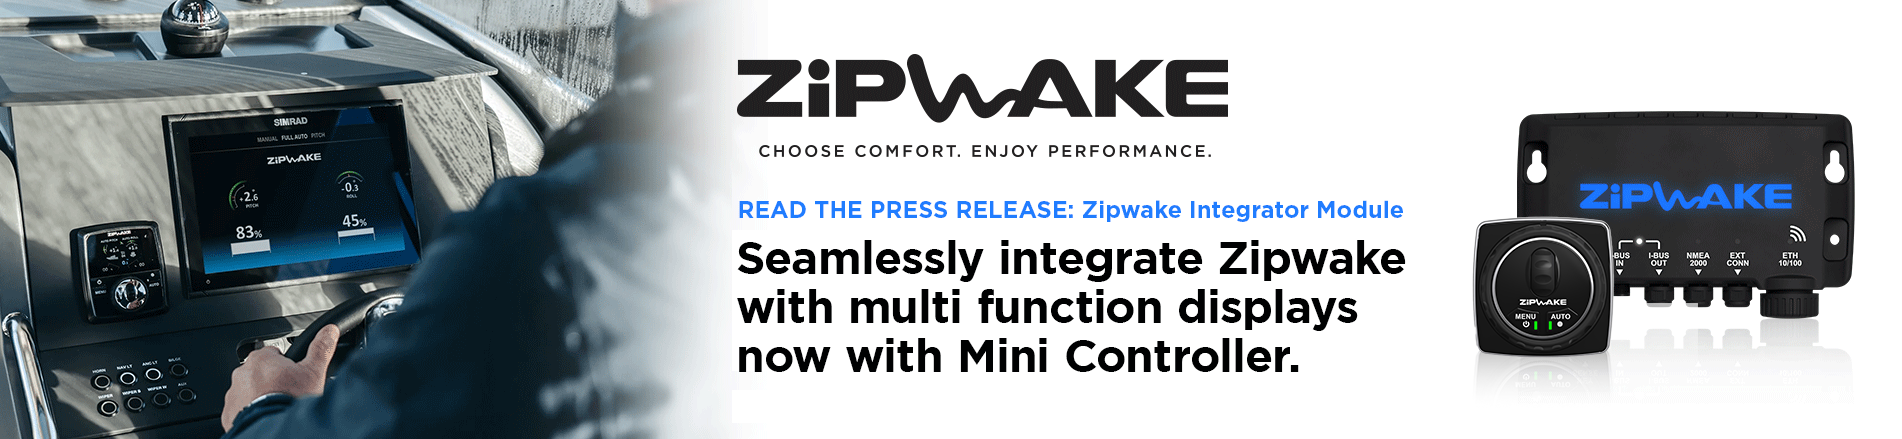 Zipwake multifunctional integrator module slider